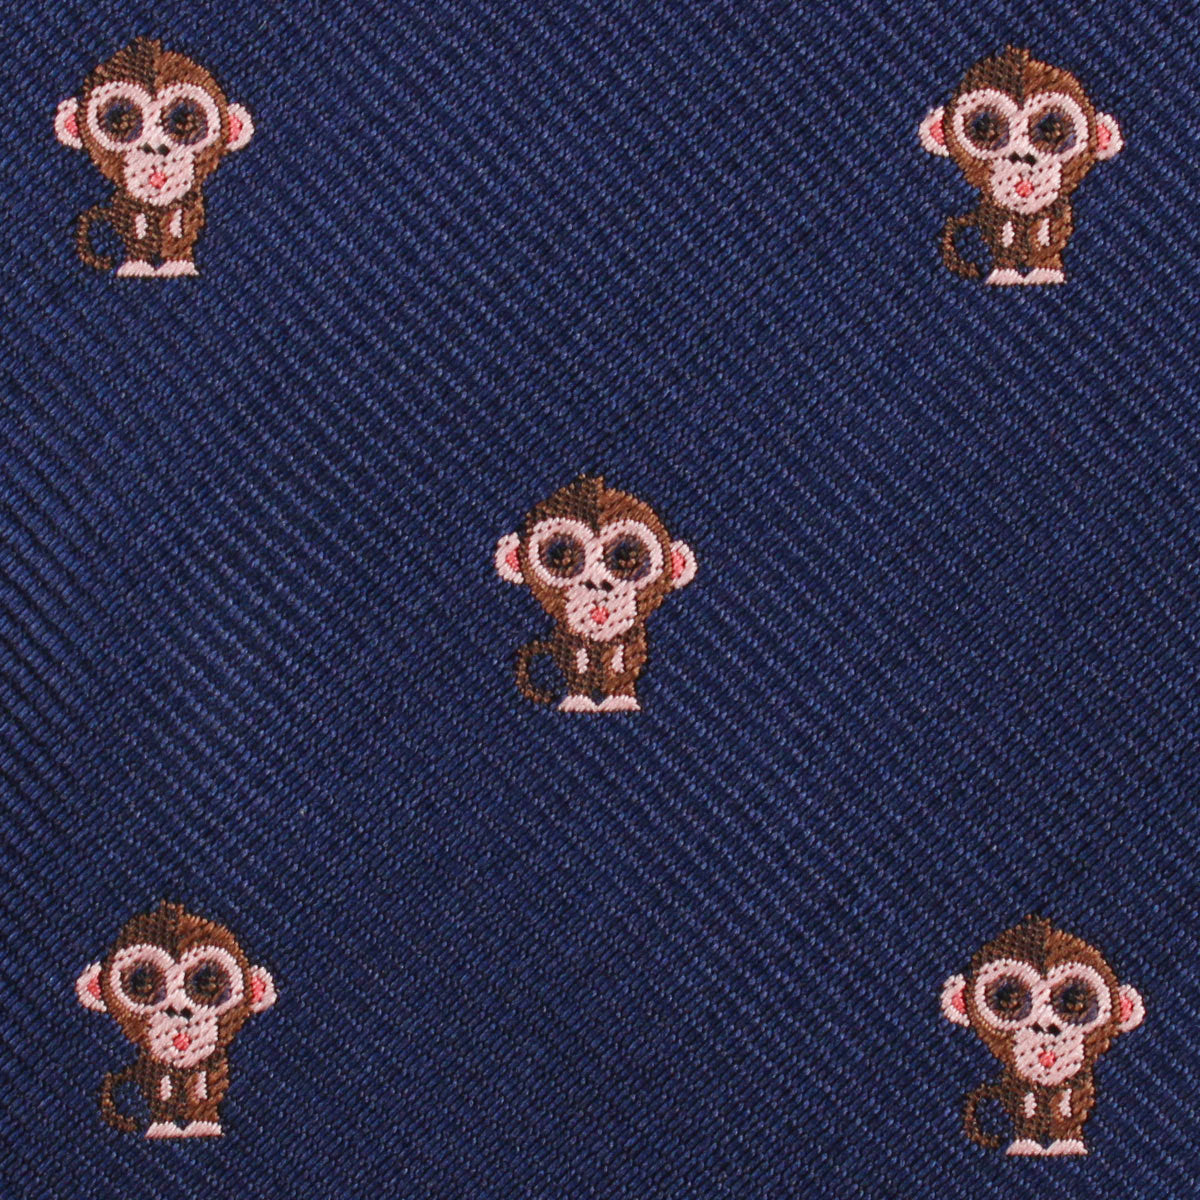 Monkey Fabric Kids Bowtie